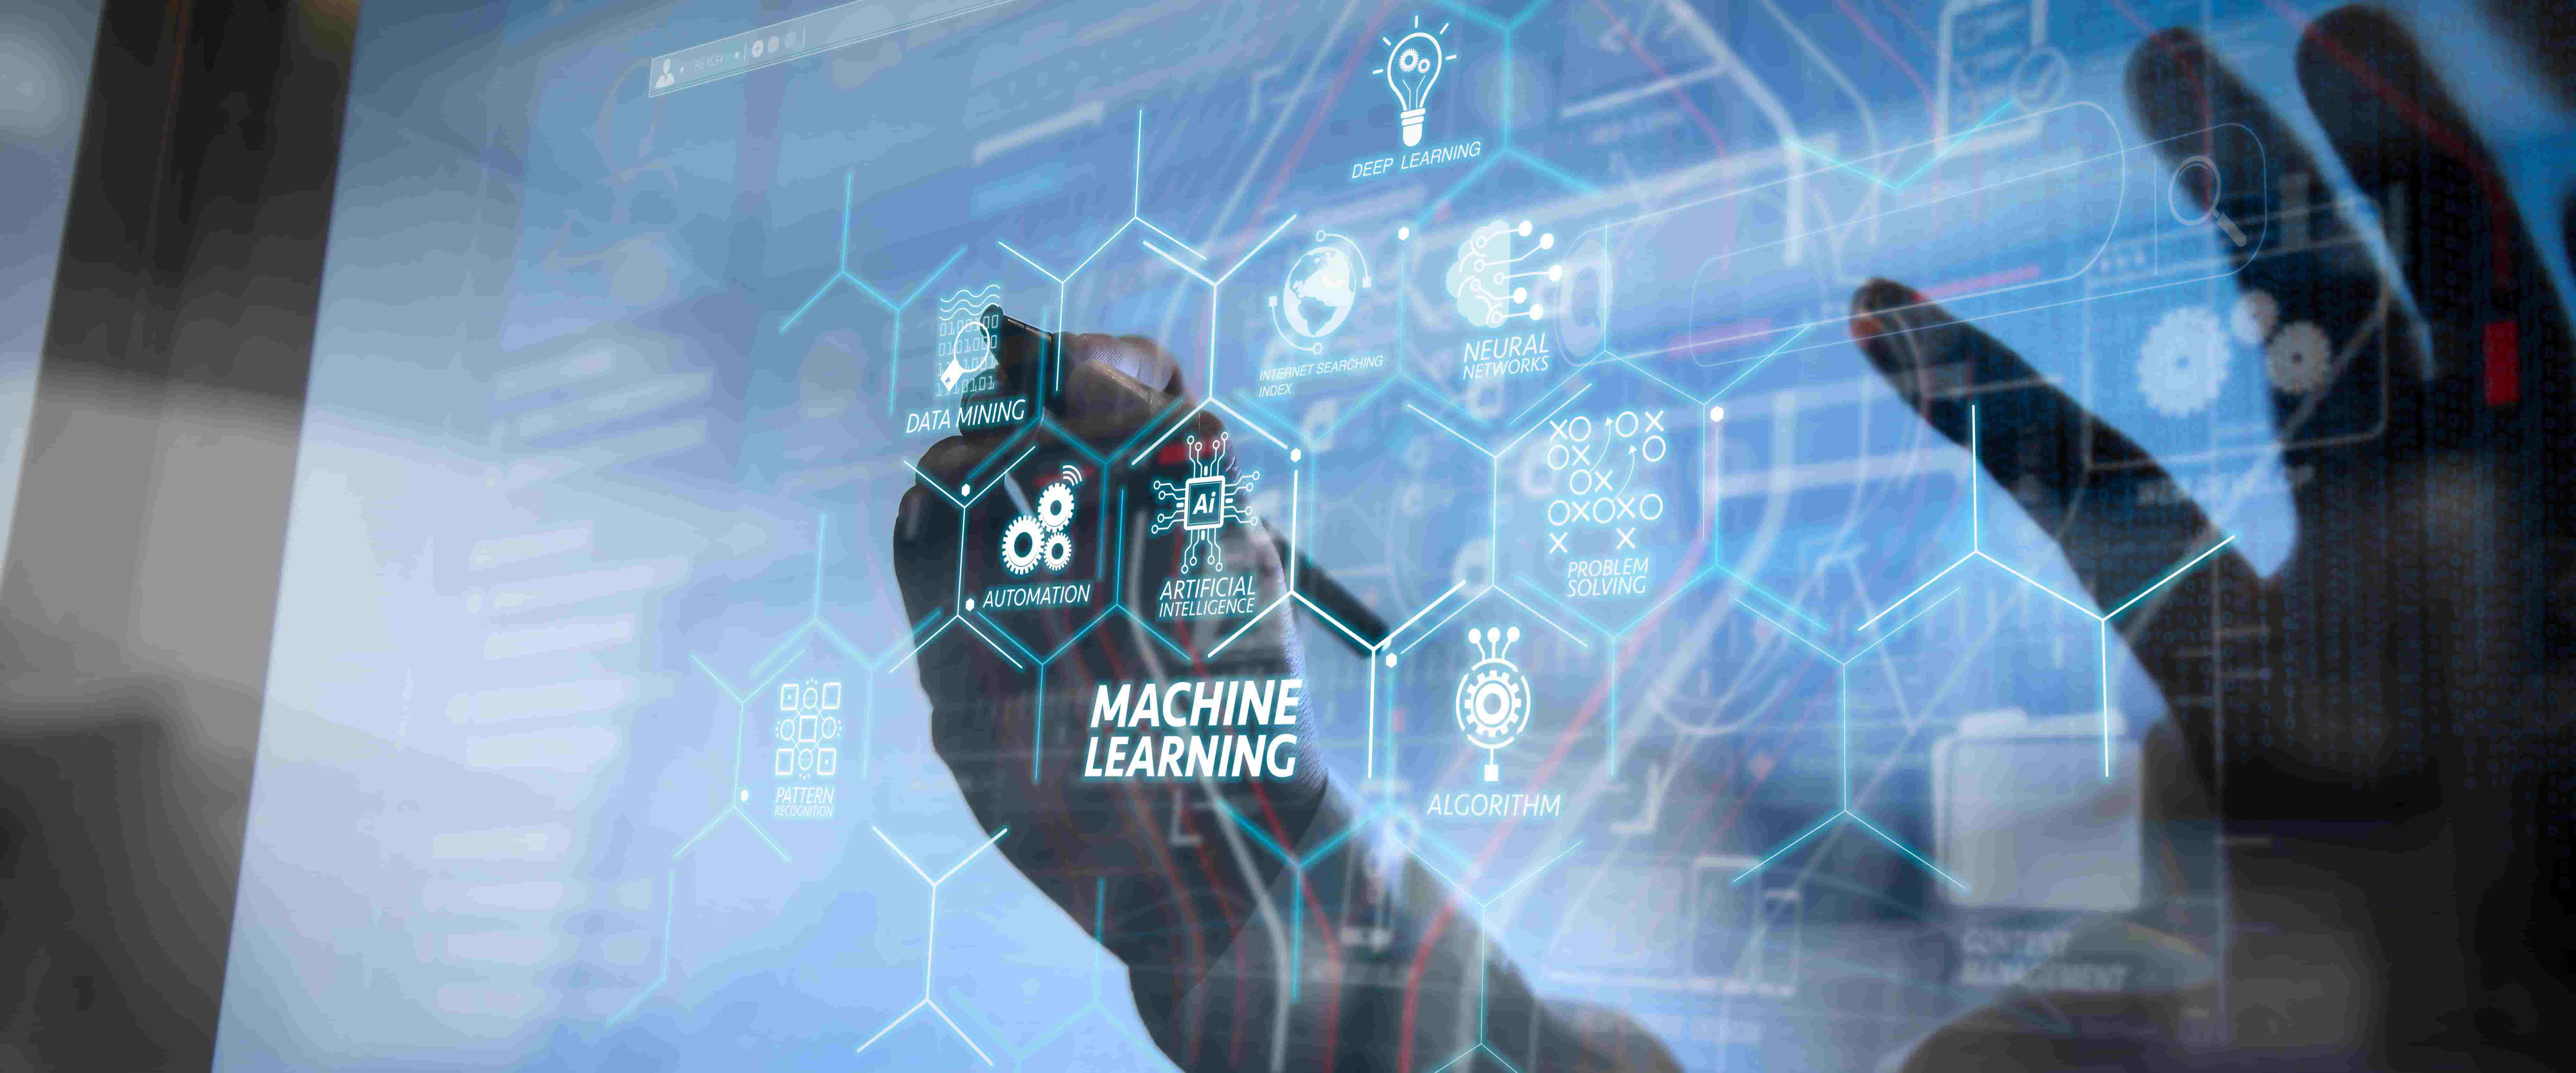 图片展示了一位使用现代触摸屏界面的人，界面上有“机器学习”和各种与人工智能相关的术语和图标。